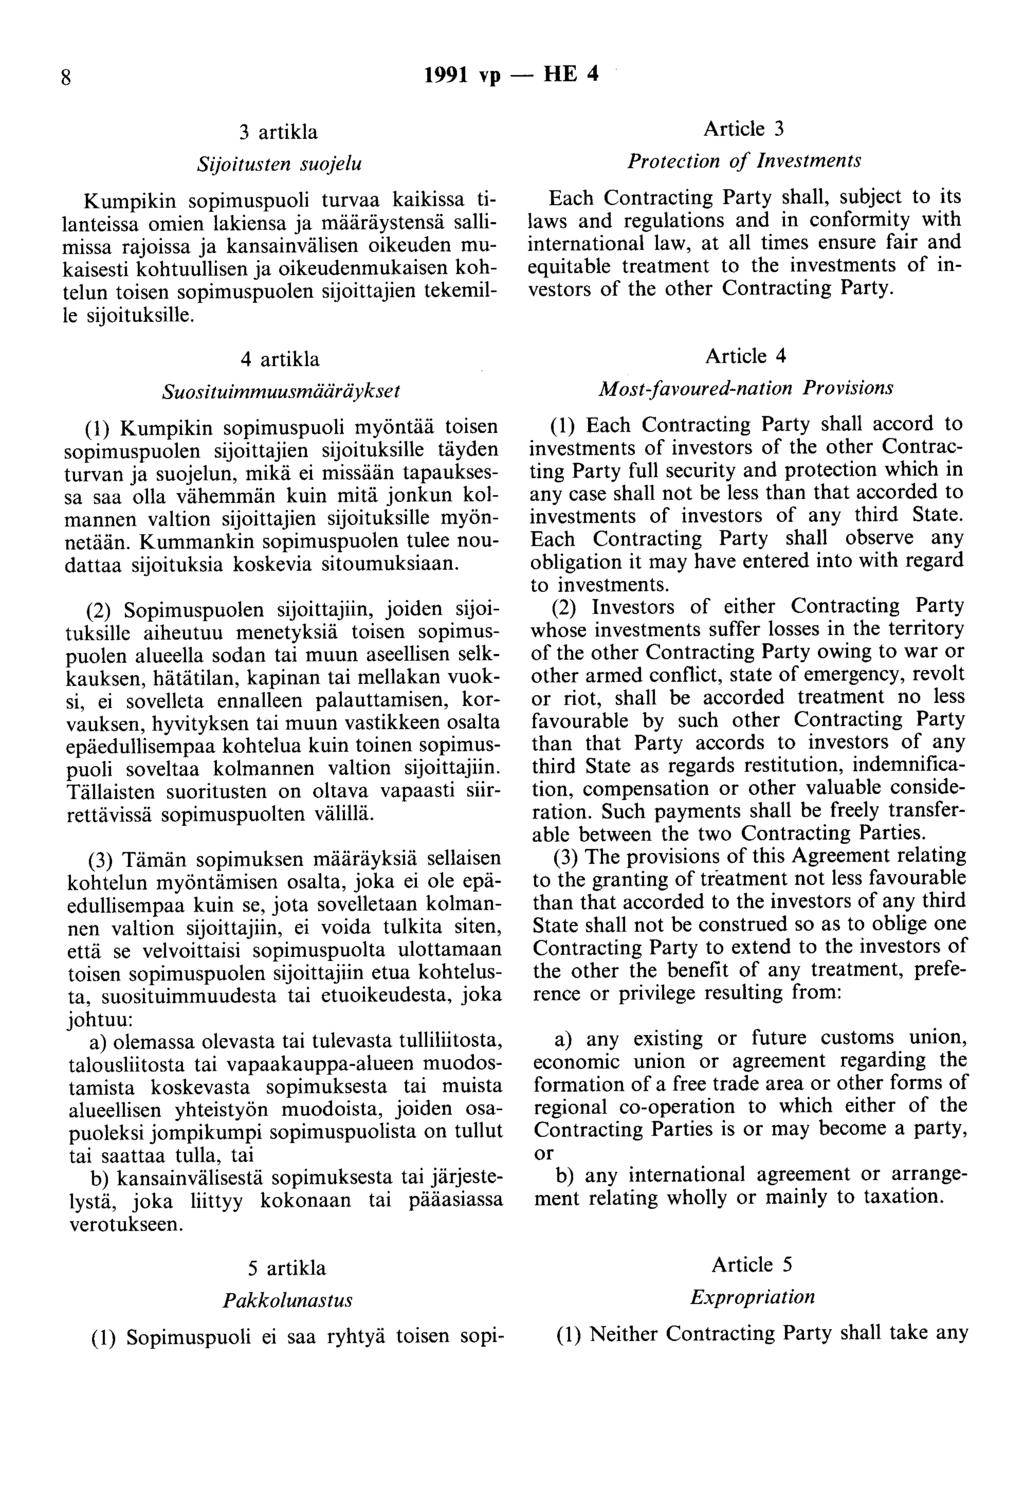 8 1991 vp- HE 4 3 artikla Sijoitusten suojelu Kumpikin sopimuspuoli turvaa kaikissa tilanteissa omien lakiensa ja määräystensä sallimissa rajoissa ja kansainvälisen oikeuden mukaisesti kohtuullisen